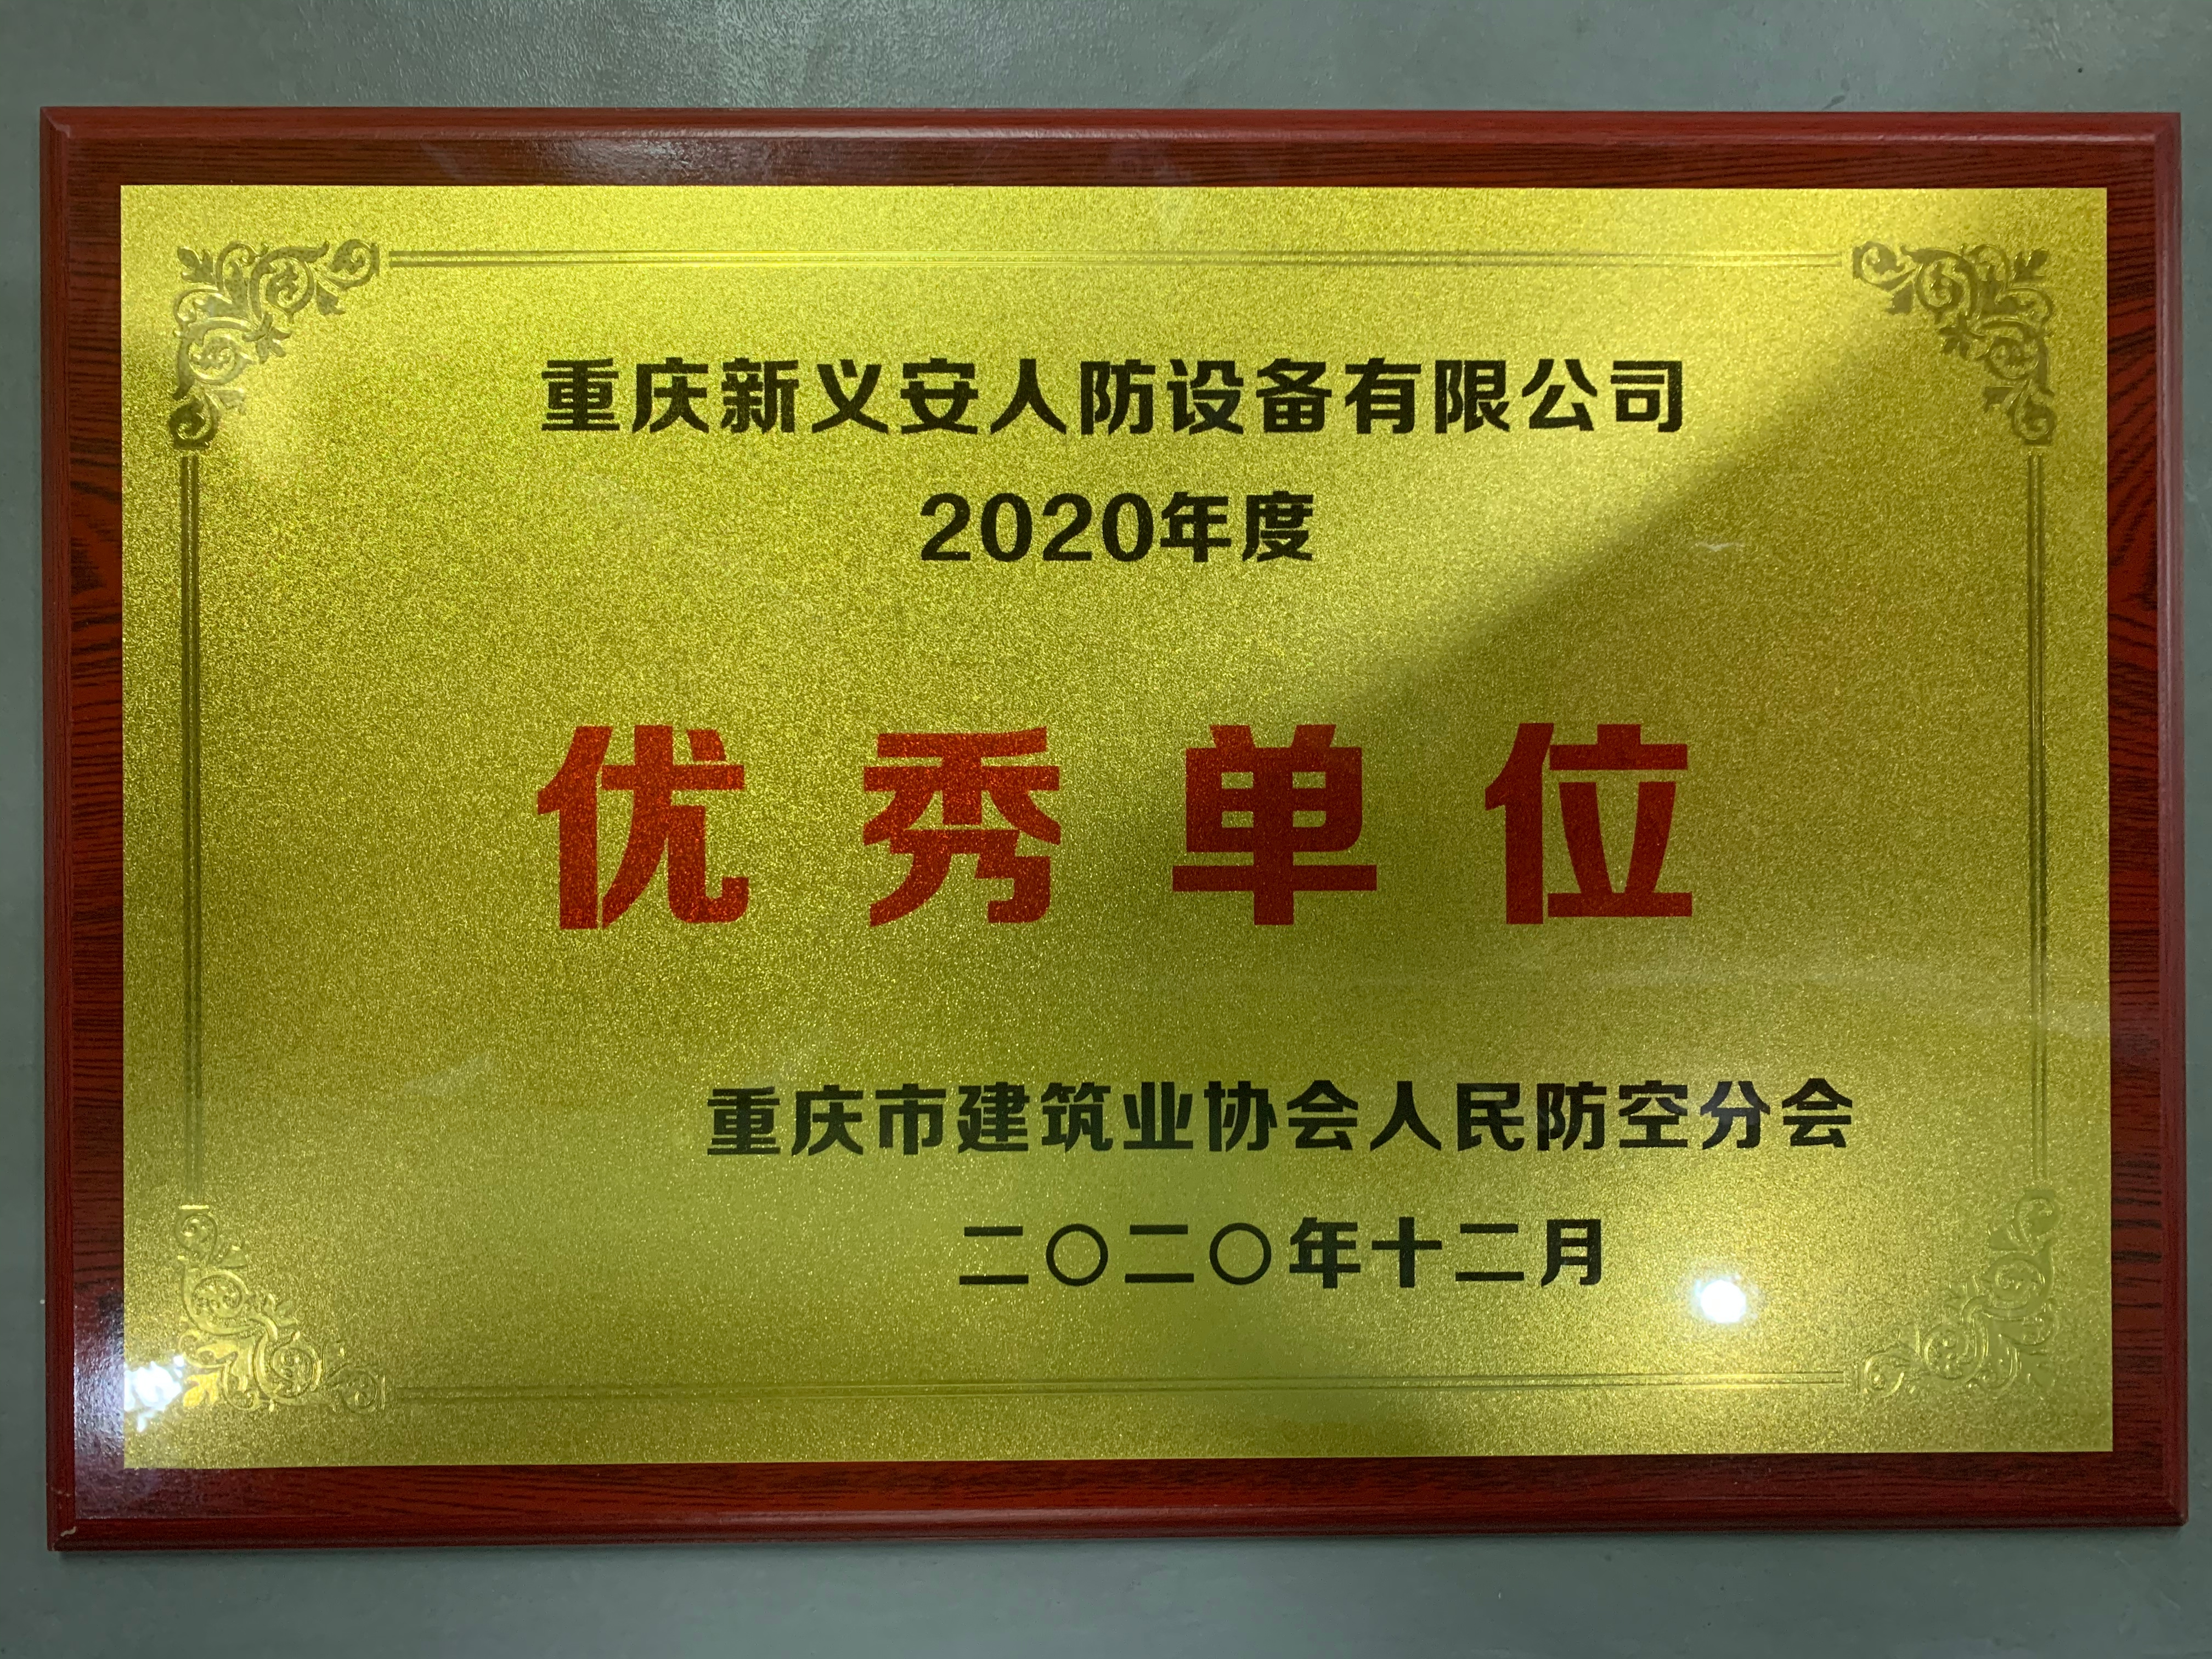 重庆市建筑业协会人民防空分会召开 2020 年度总结表彰大会，我司荣获优秀单位荣誉称号！